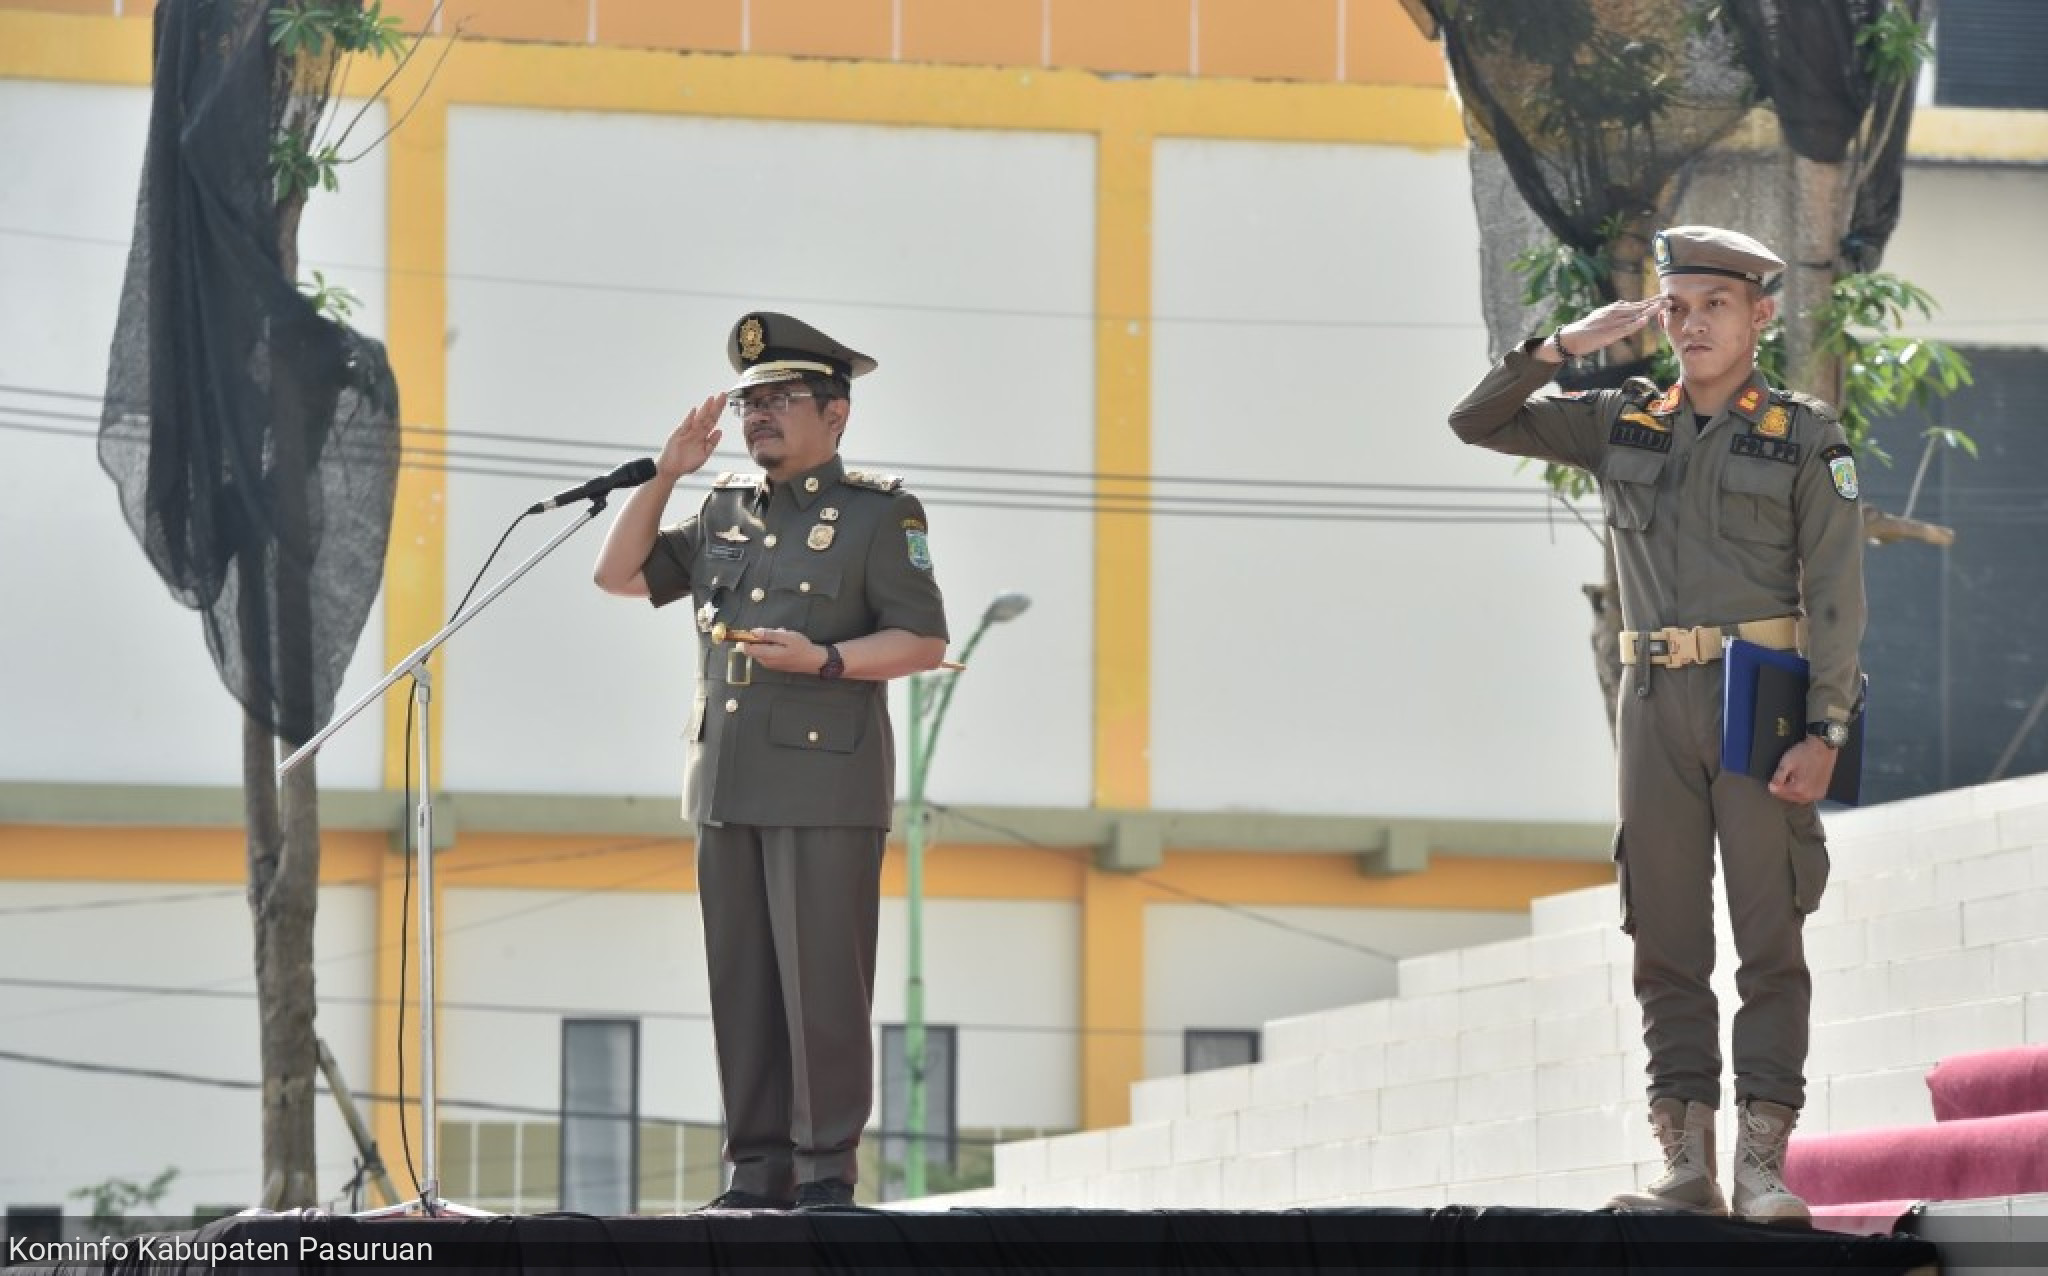 Pj. Bupati Andriyanto Pimpin Upacara Gelar Pasukan HUT ke-74 Satpol PP, HUT Ke-105 Damkar & Penyelamatan, dan HUT Ke-62 Satlinmas